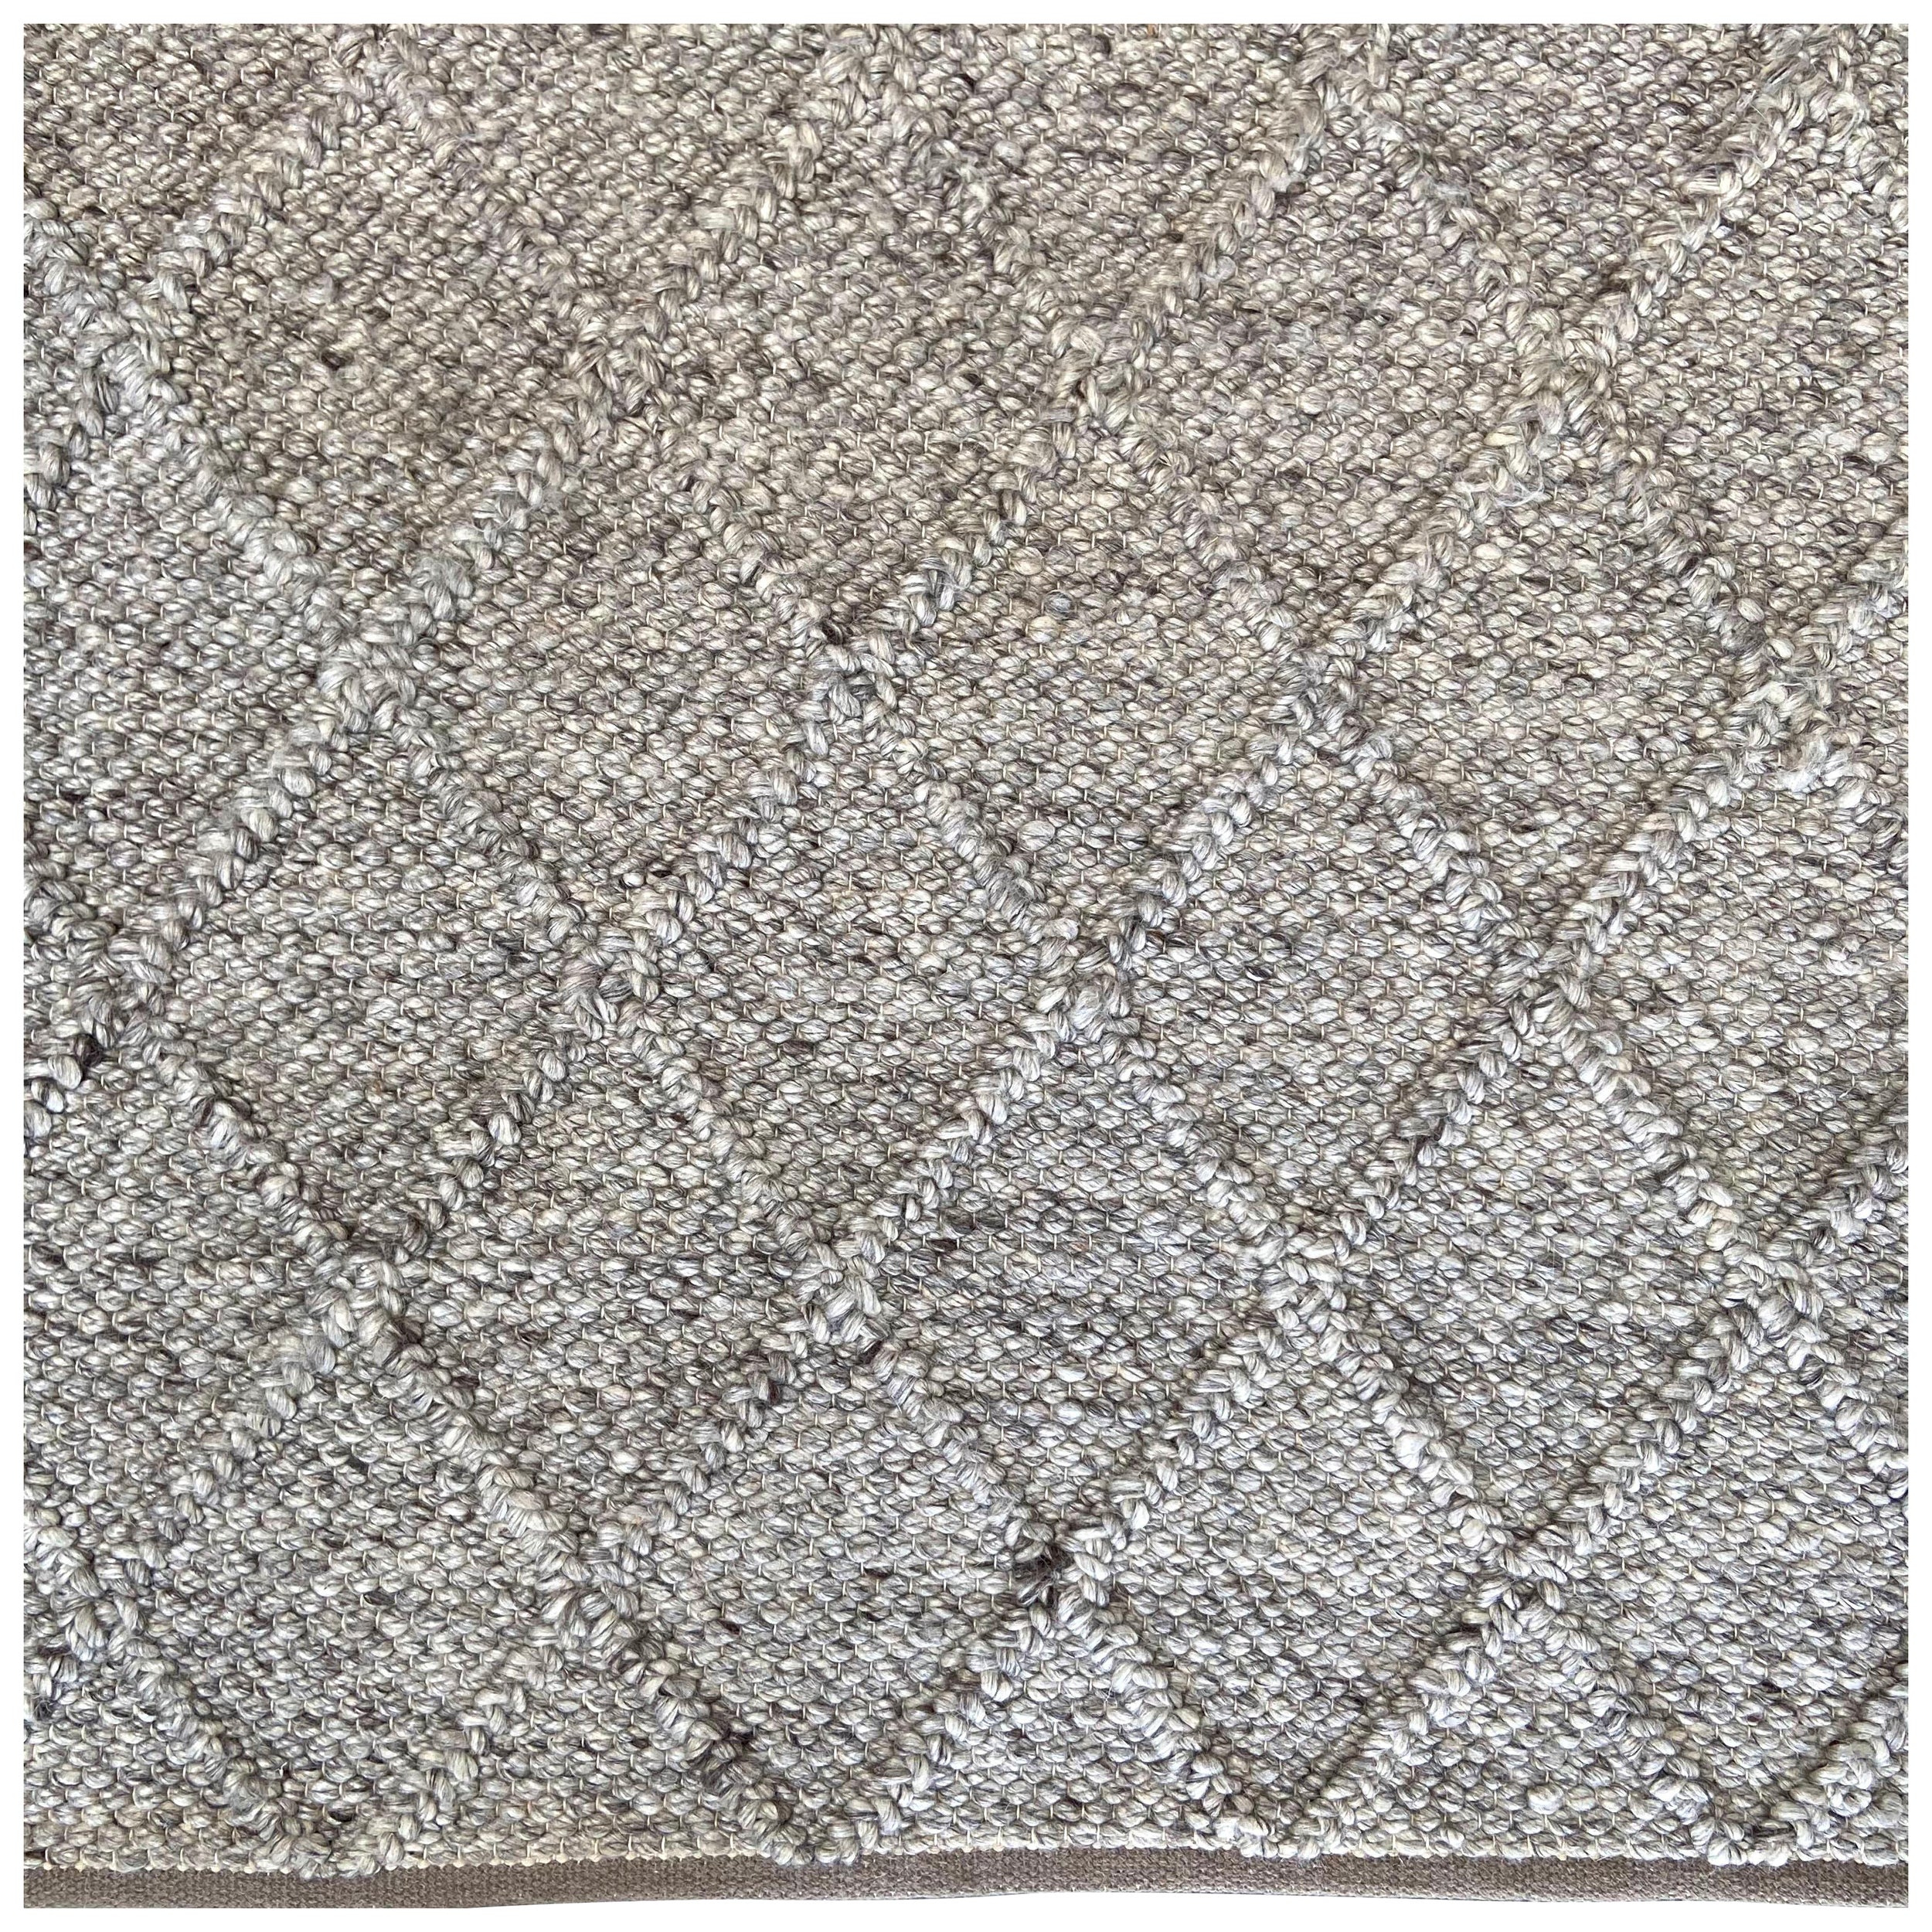 Wool Braided Decorative Rug